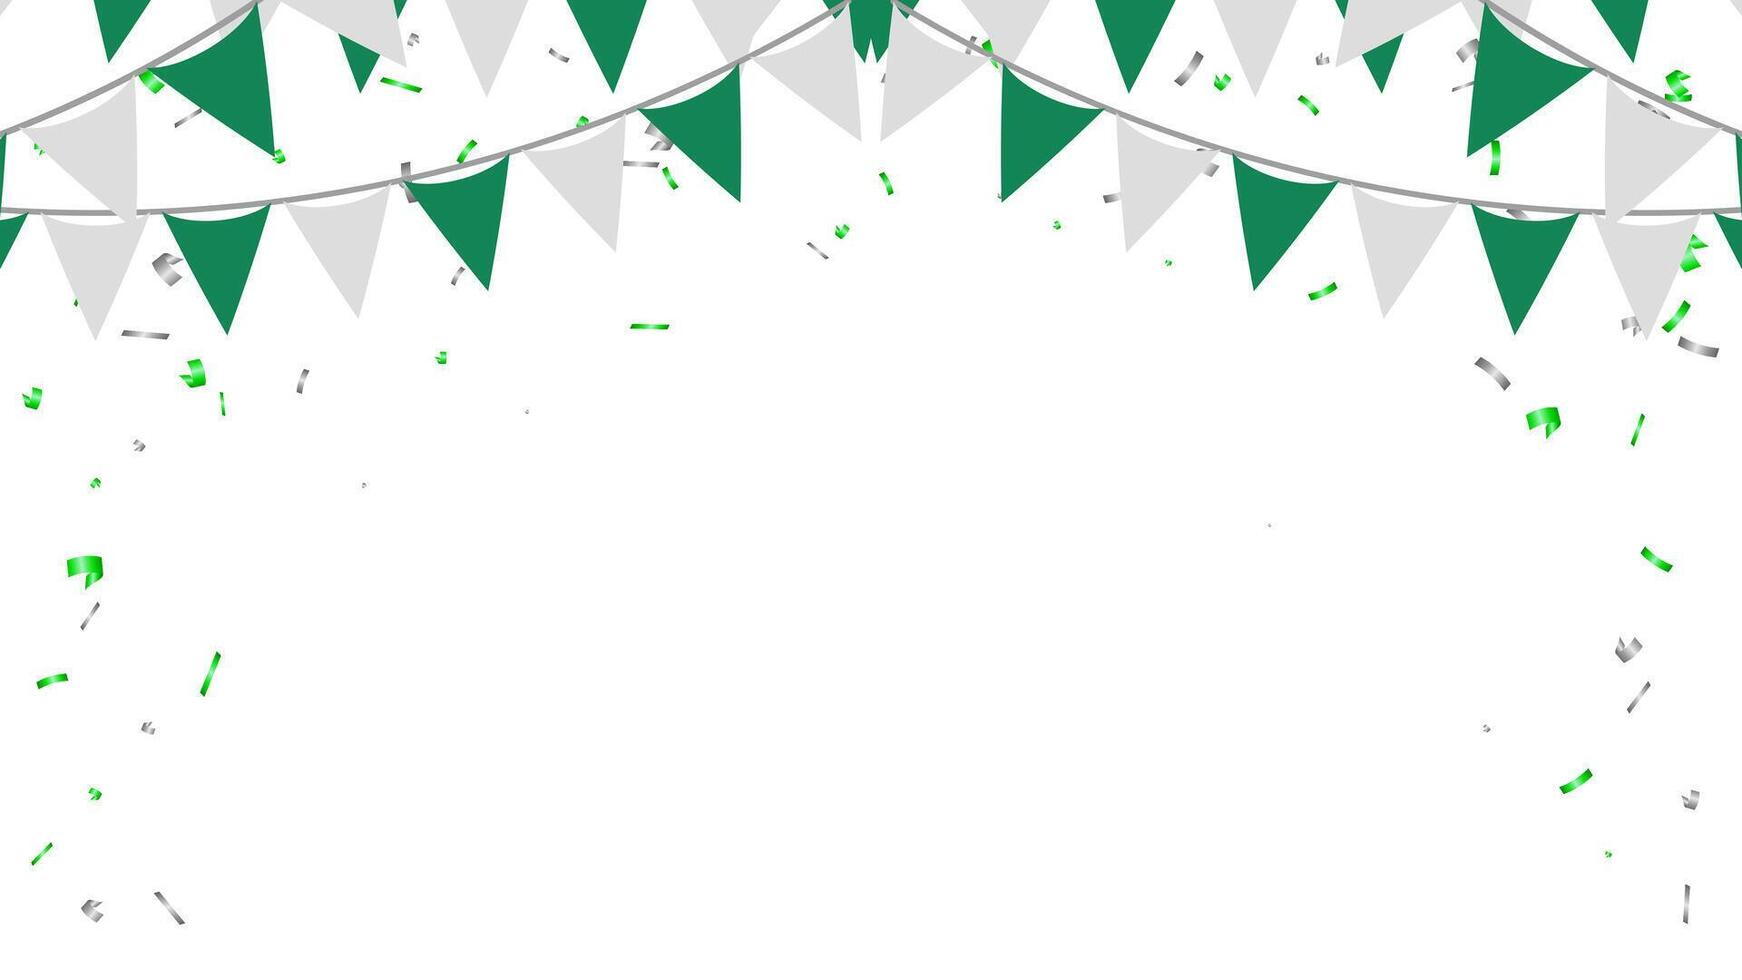 viering driehoek wimpels keten en confetti kader banier voor verjaardag, viering, partij, verjaardag vector